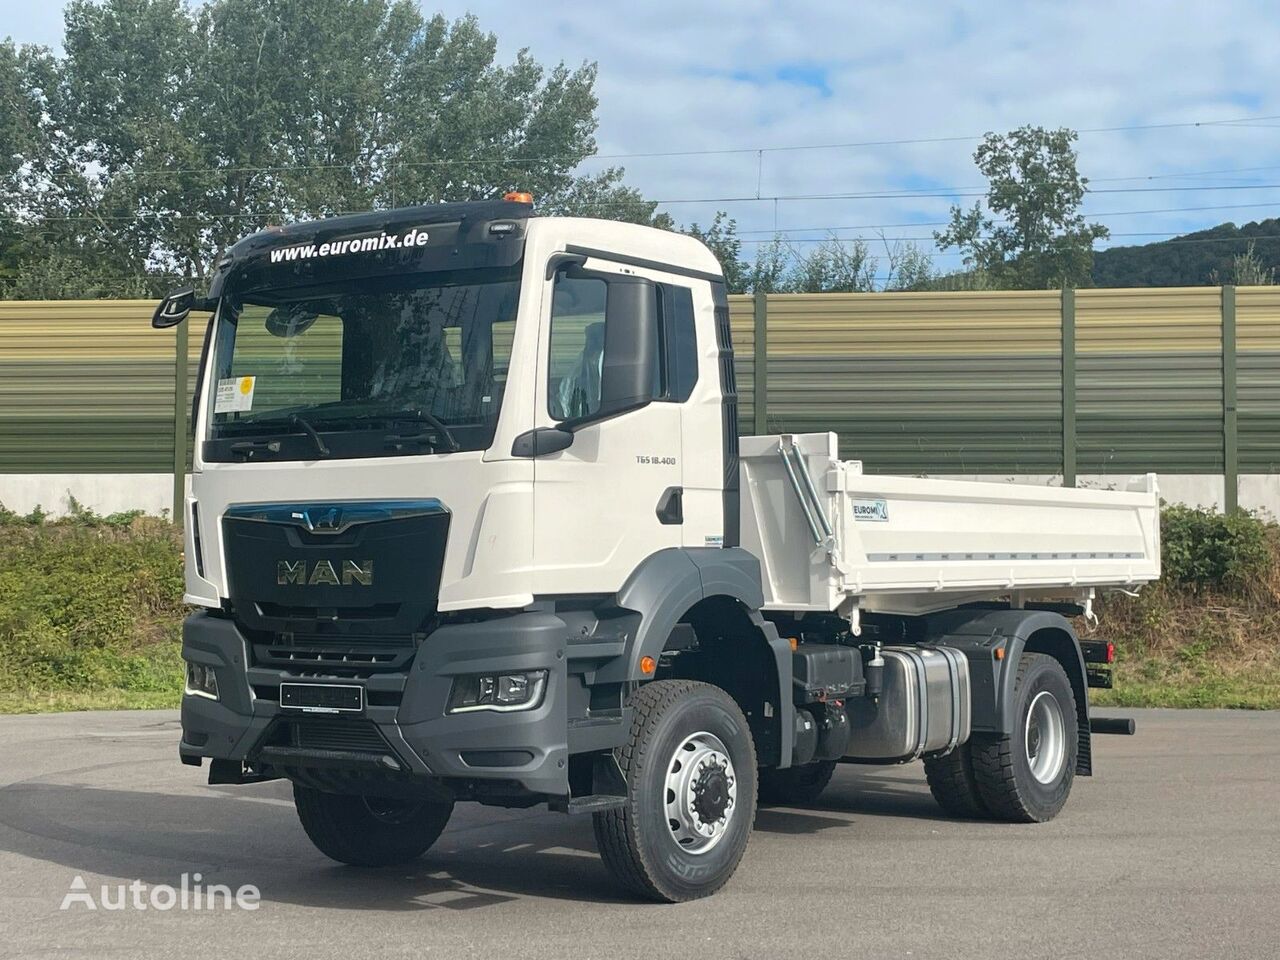 new MAN TGS 18.400 TG3 4x4 Euro6e 3-Seiten-Kippe Euromix dump truck